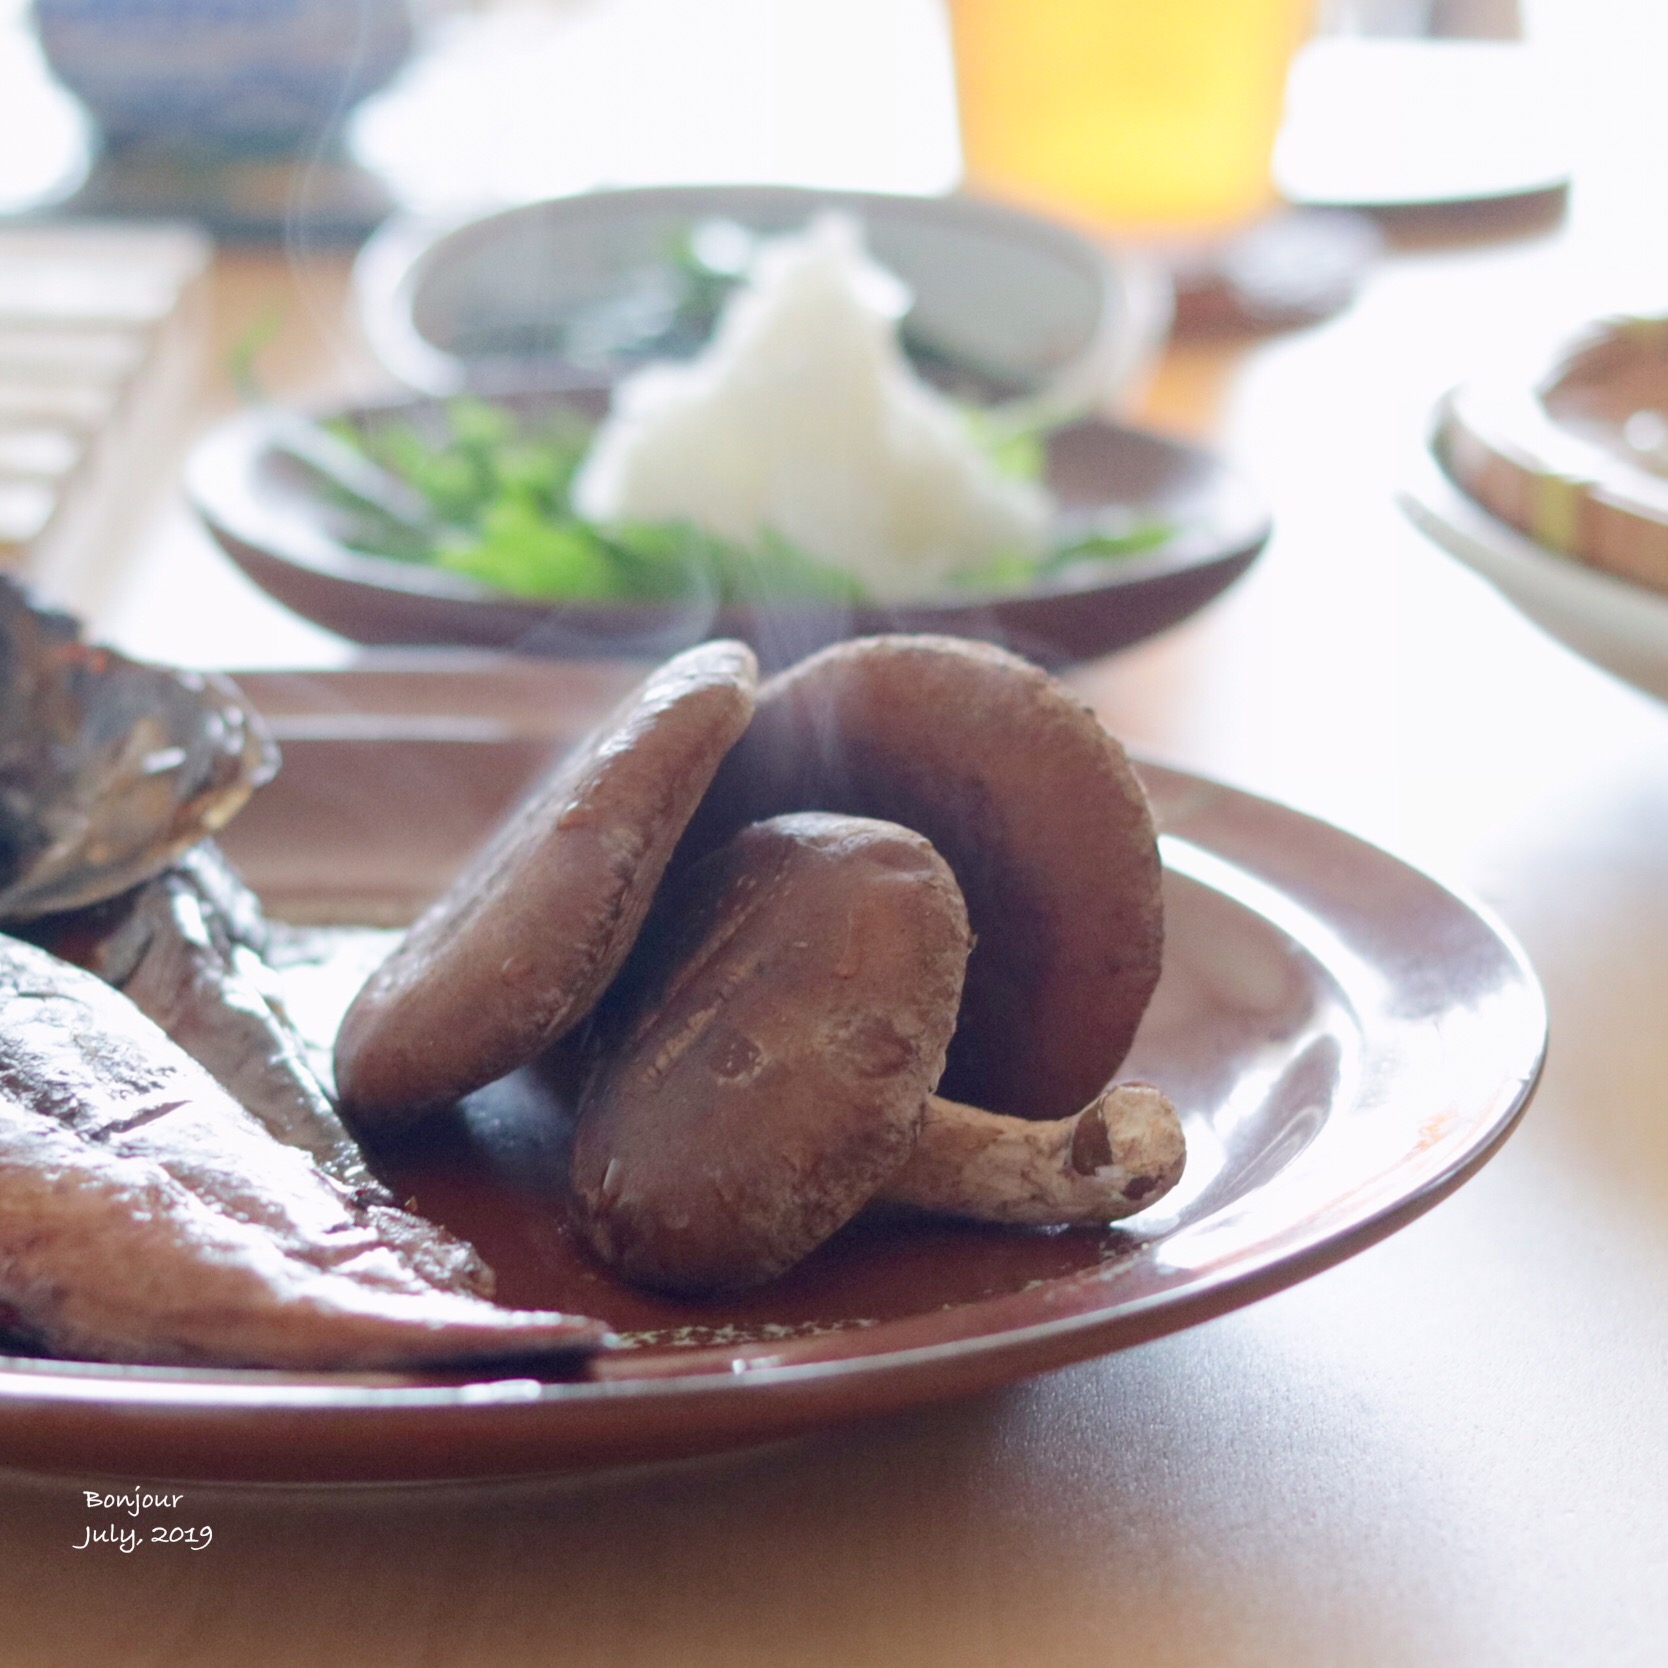 炙り椎茸と燻し鯖の焼き物 大根おろしとお醤油で。